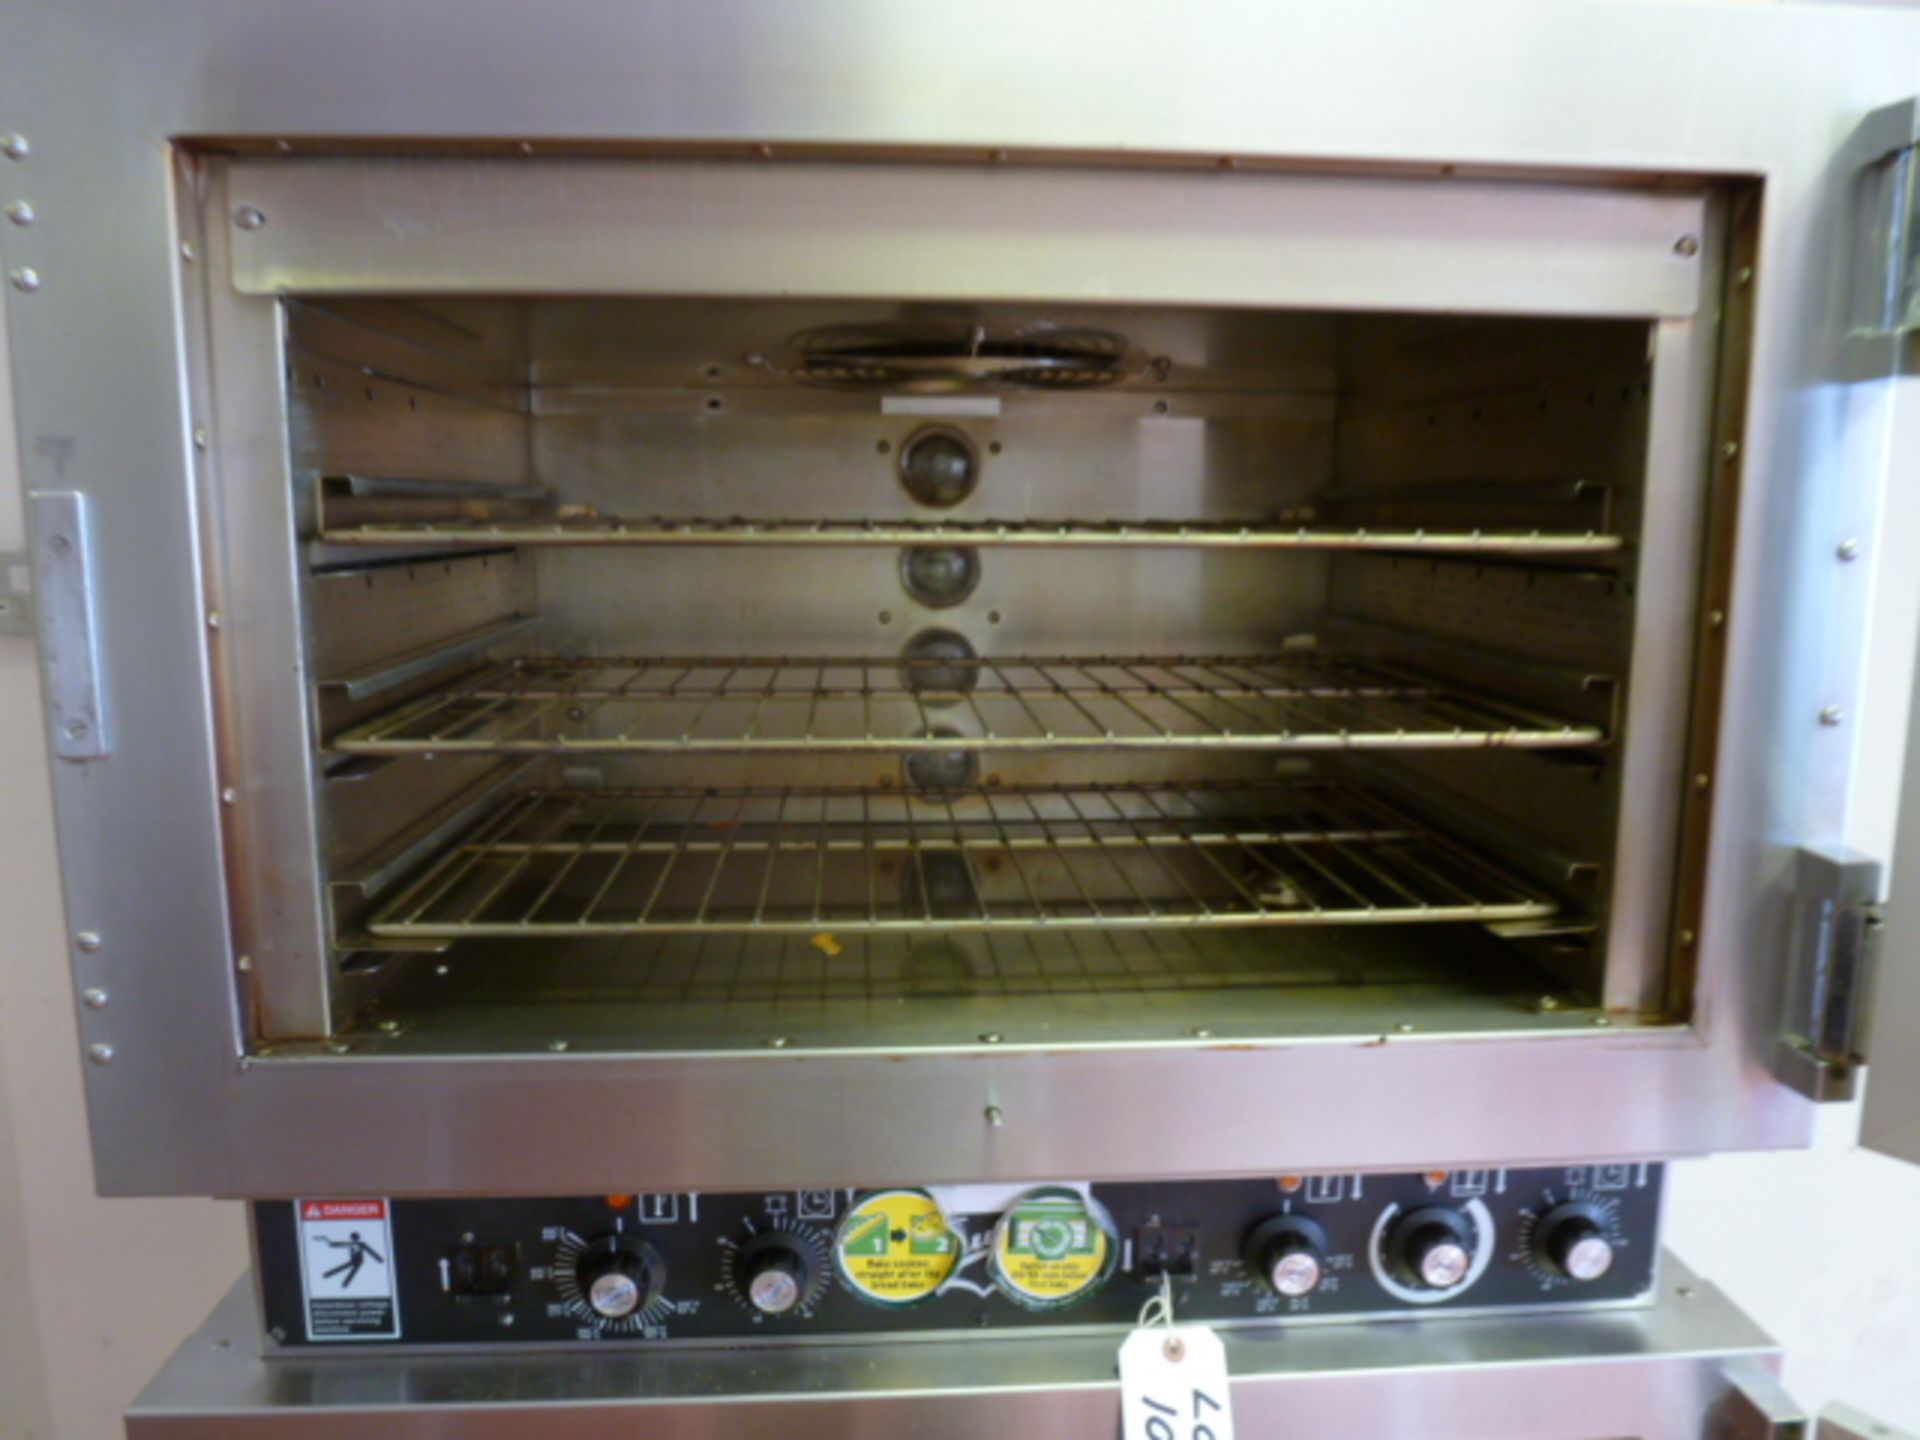 Duke Stainless Steel Commercial 3 Rack Bakery Oven, Over 9 Rack Proover. Model AHPO-618, S/N 30- - Image 6 of 9